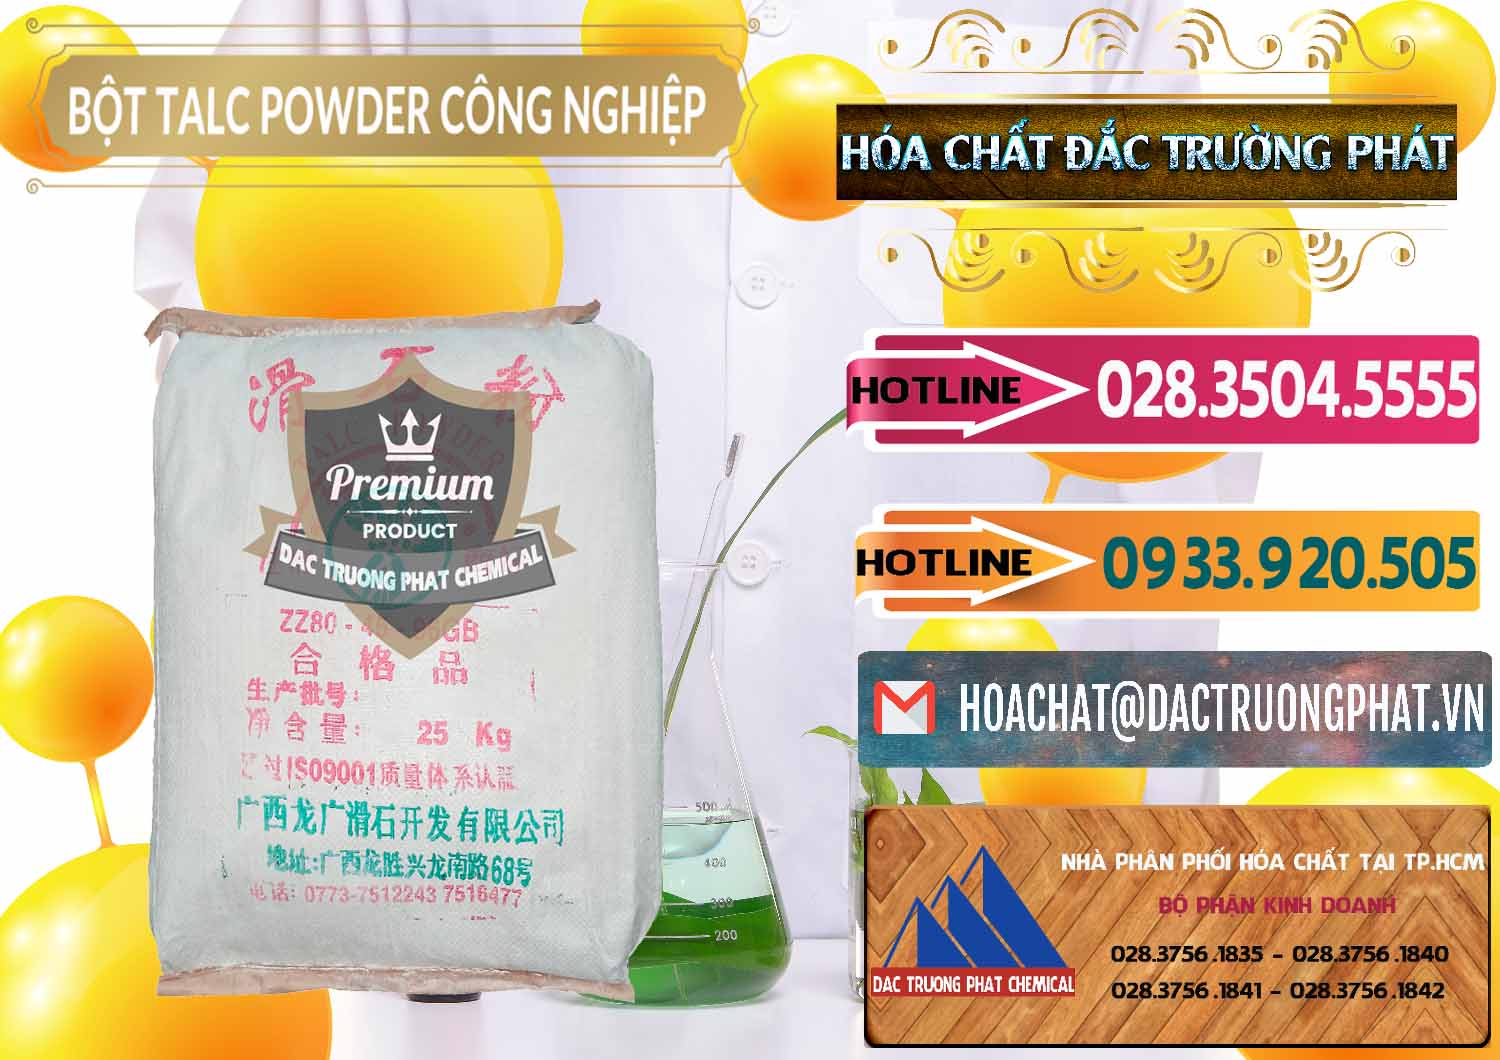 Cty chuyên kinh doanh - bán Bột Talc Powder Công Nghiệp Trung Quốc China - 0037 - Công ty bán và phân phối hóa chất tại TP.HCM - dactruongphat.vn